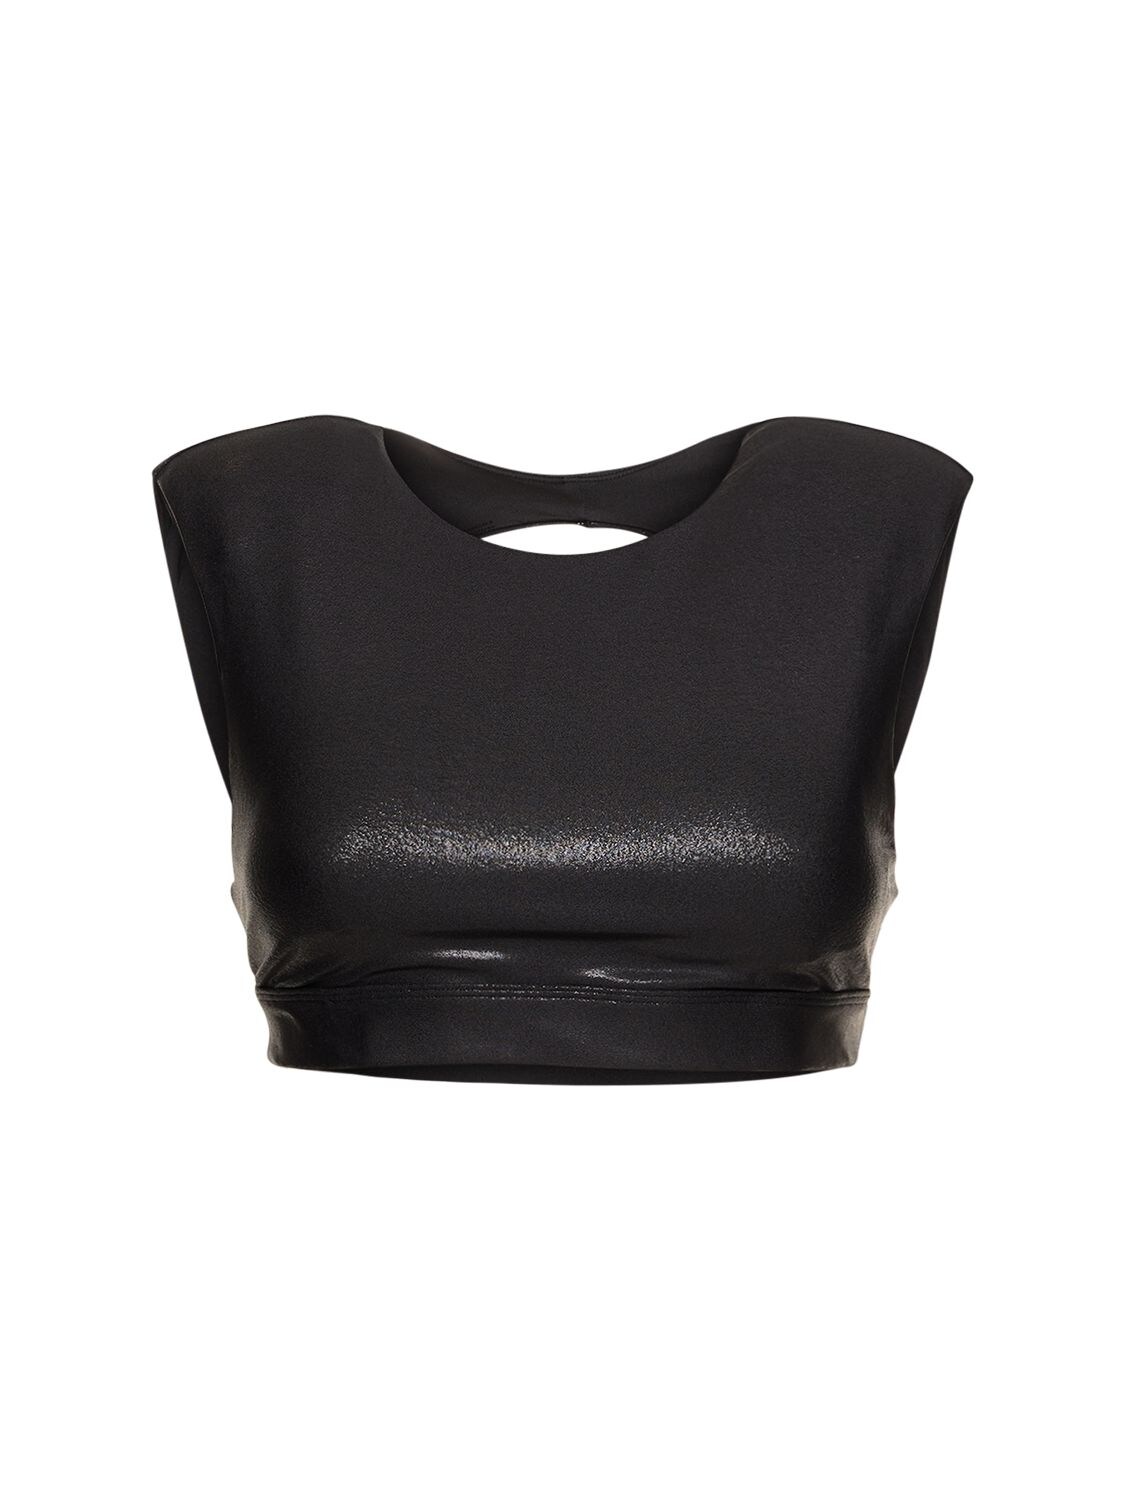 Super Shine Flash sports bra in black - Alo Yoga